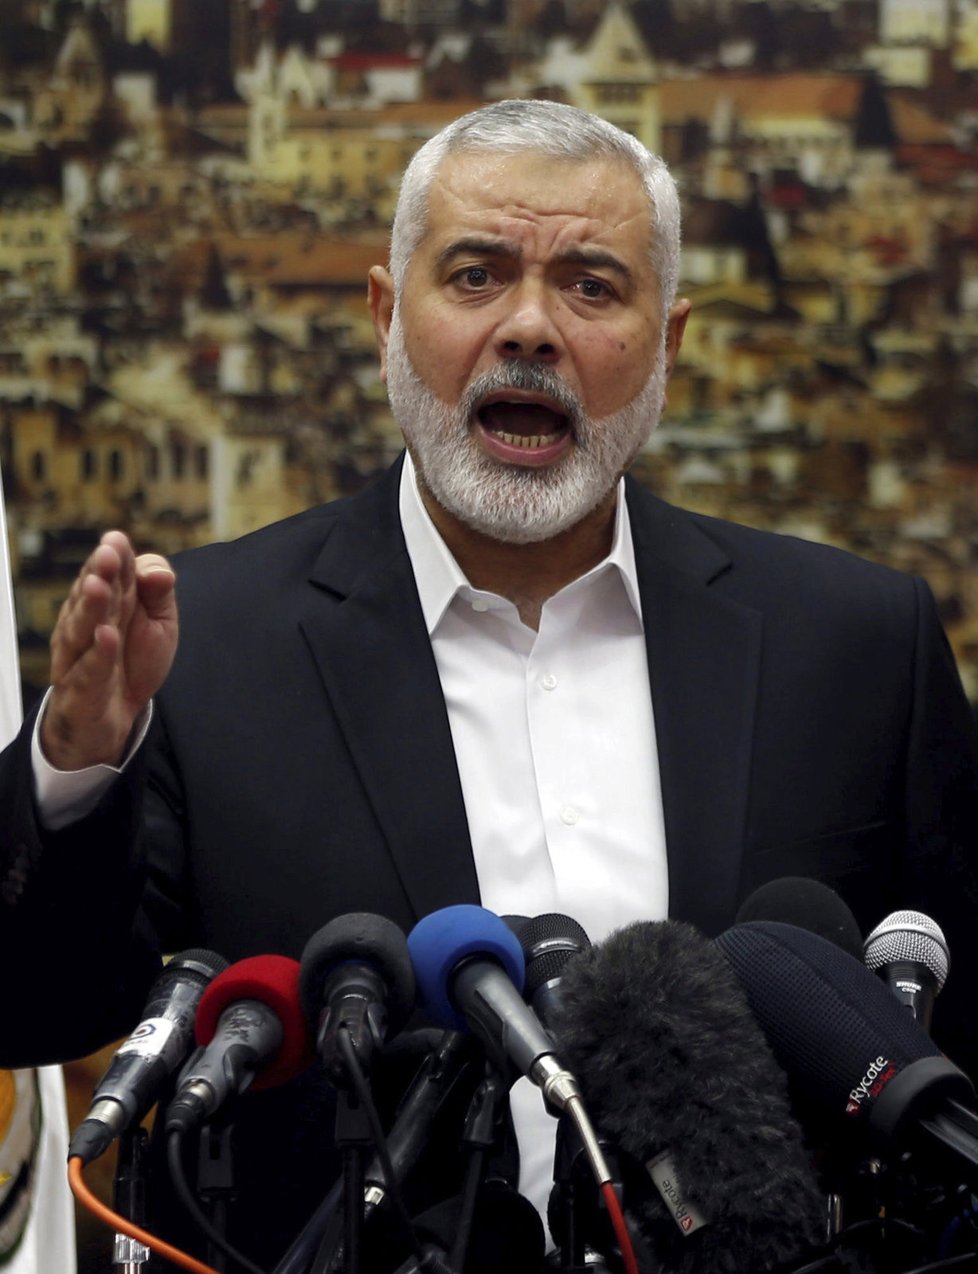 Vůdce palestinské radikální organizace Hamás Ismáíl Haníja ve čtvrtek vyzval Palestince k zahájení nového povstání - intifády - proti Izraeli.